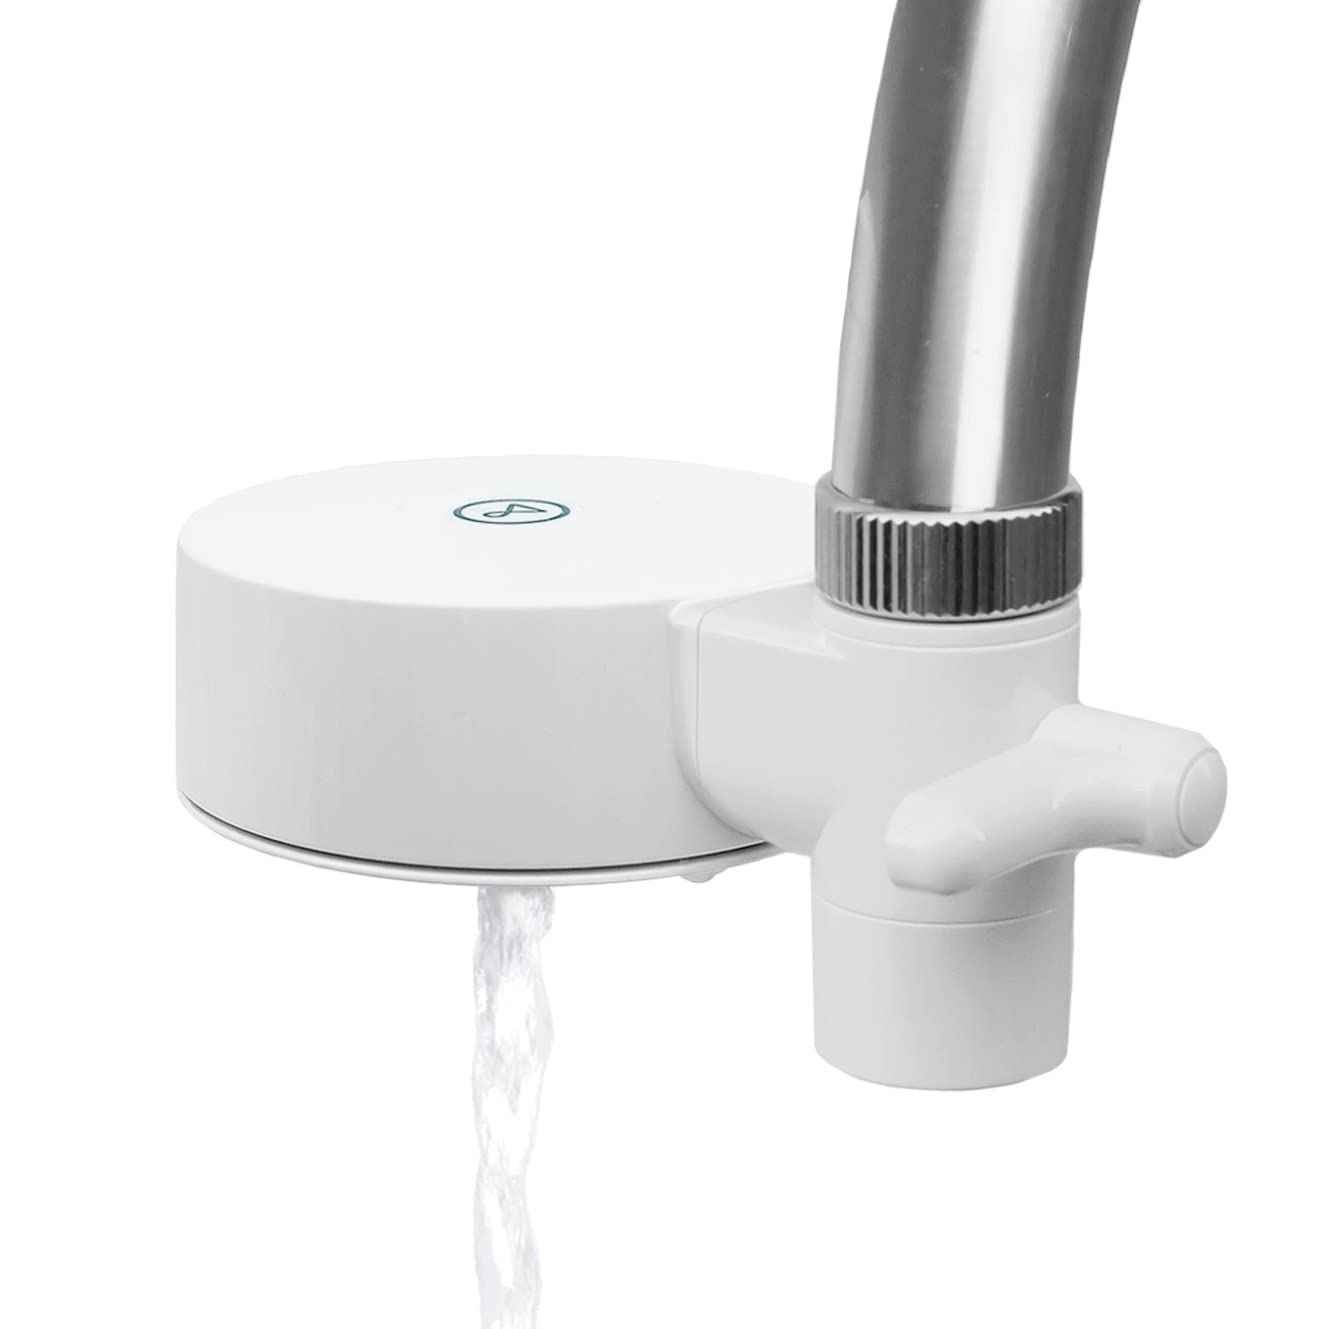 TAPP Water EcoPro Compact - Der kleinste nachhaltige Wasserfilter für den Wasserhahn - Entfernt schlechten Geruch und Geschmack - Filtert +100 Substanzen - Kein Werkzeug erforderlich (weiß)